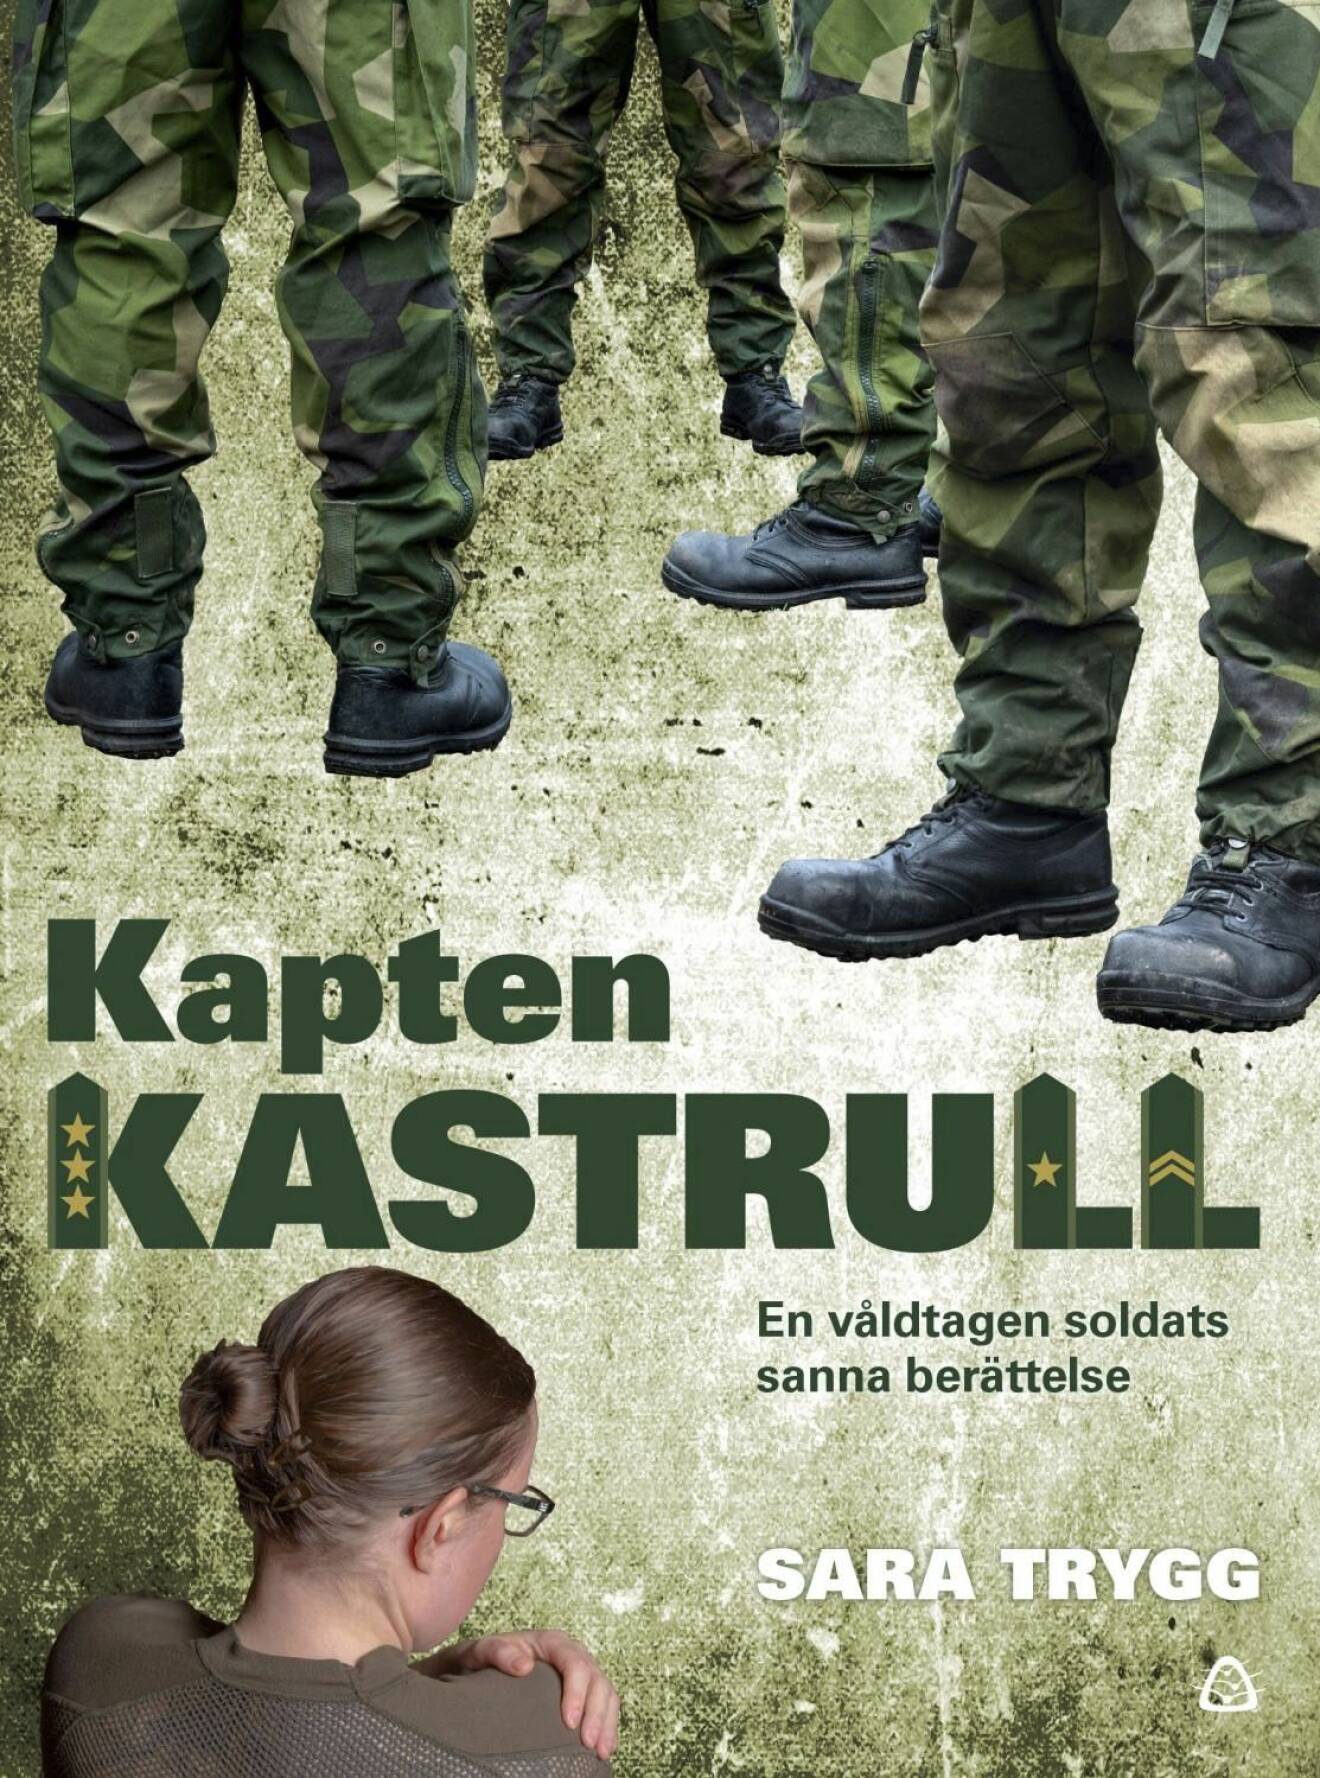 Sara Trygg har skrivit boken Kapten Kastrull – en våldtagen soldats sanna berättelse